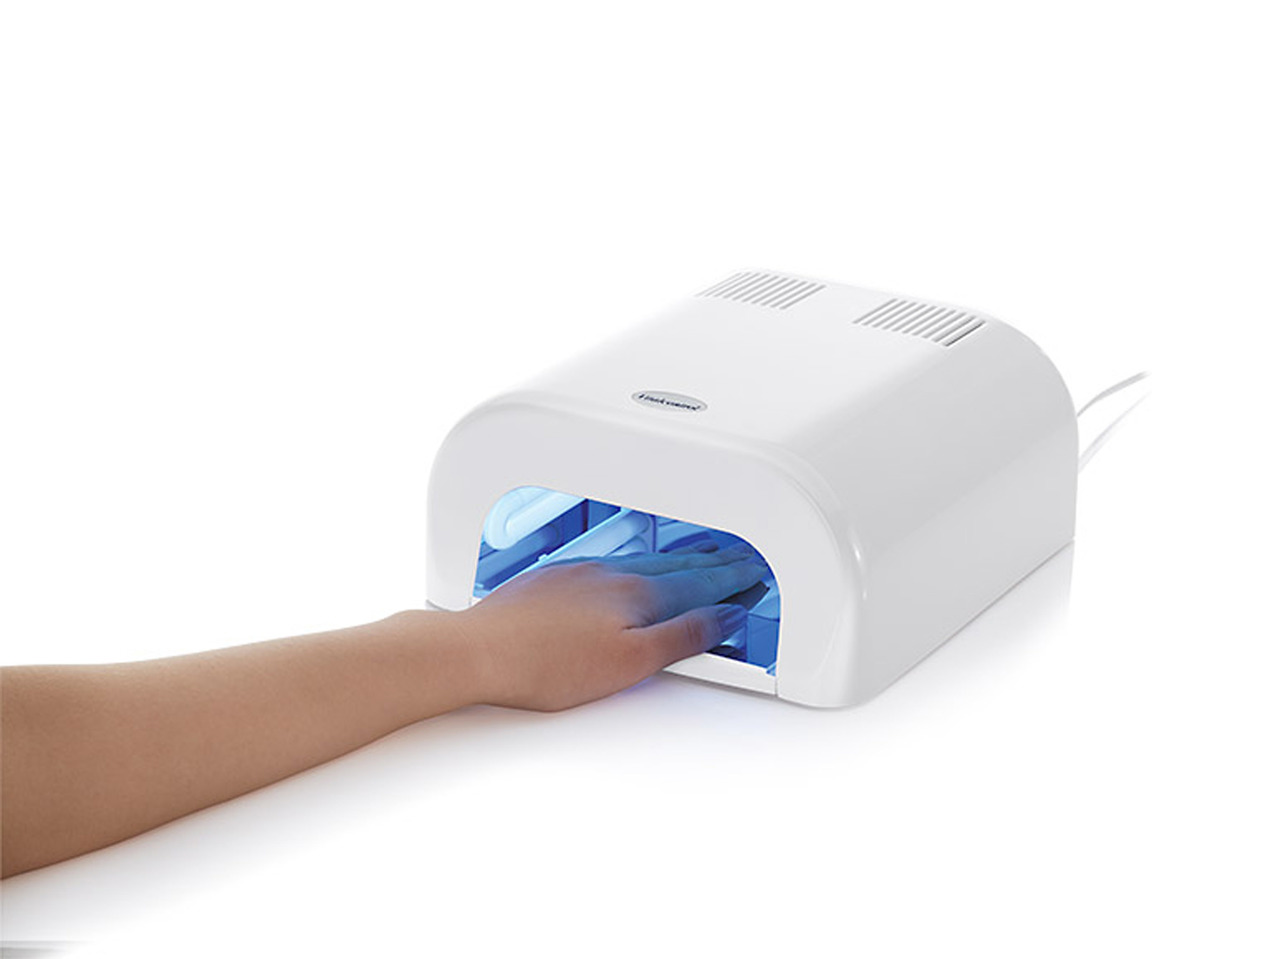 UV Nail Dryer